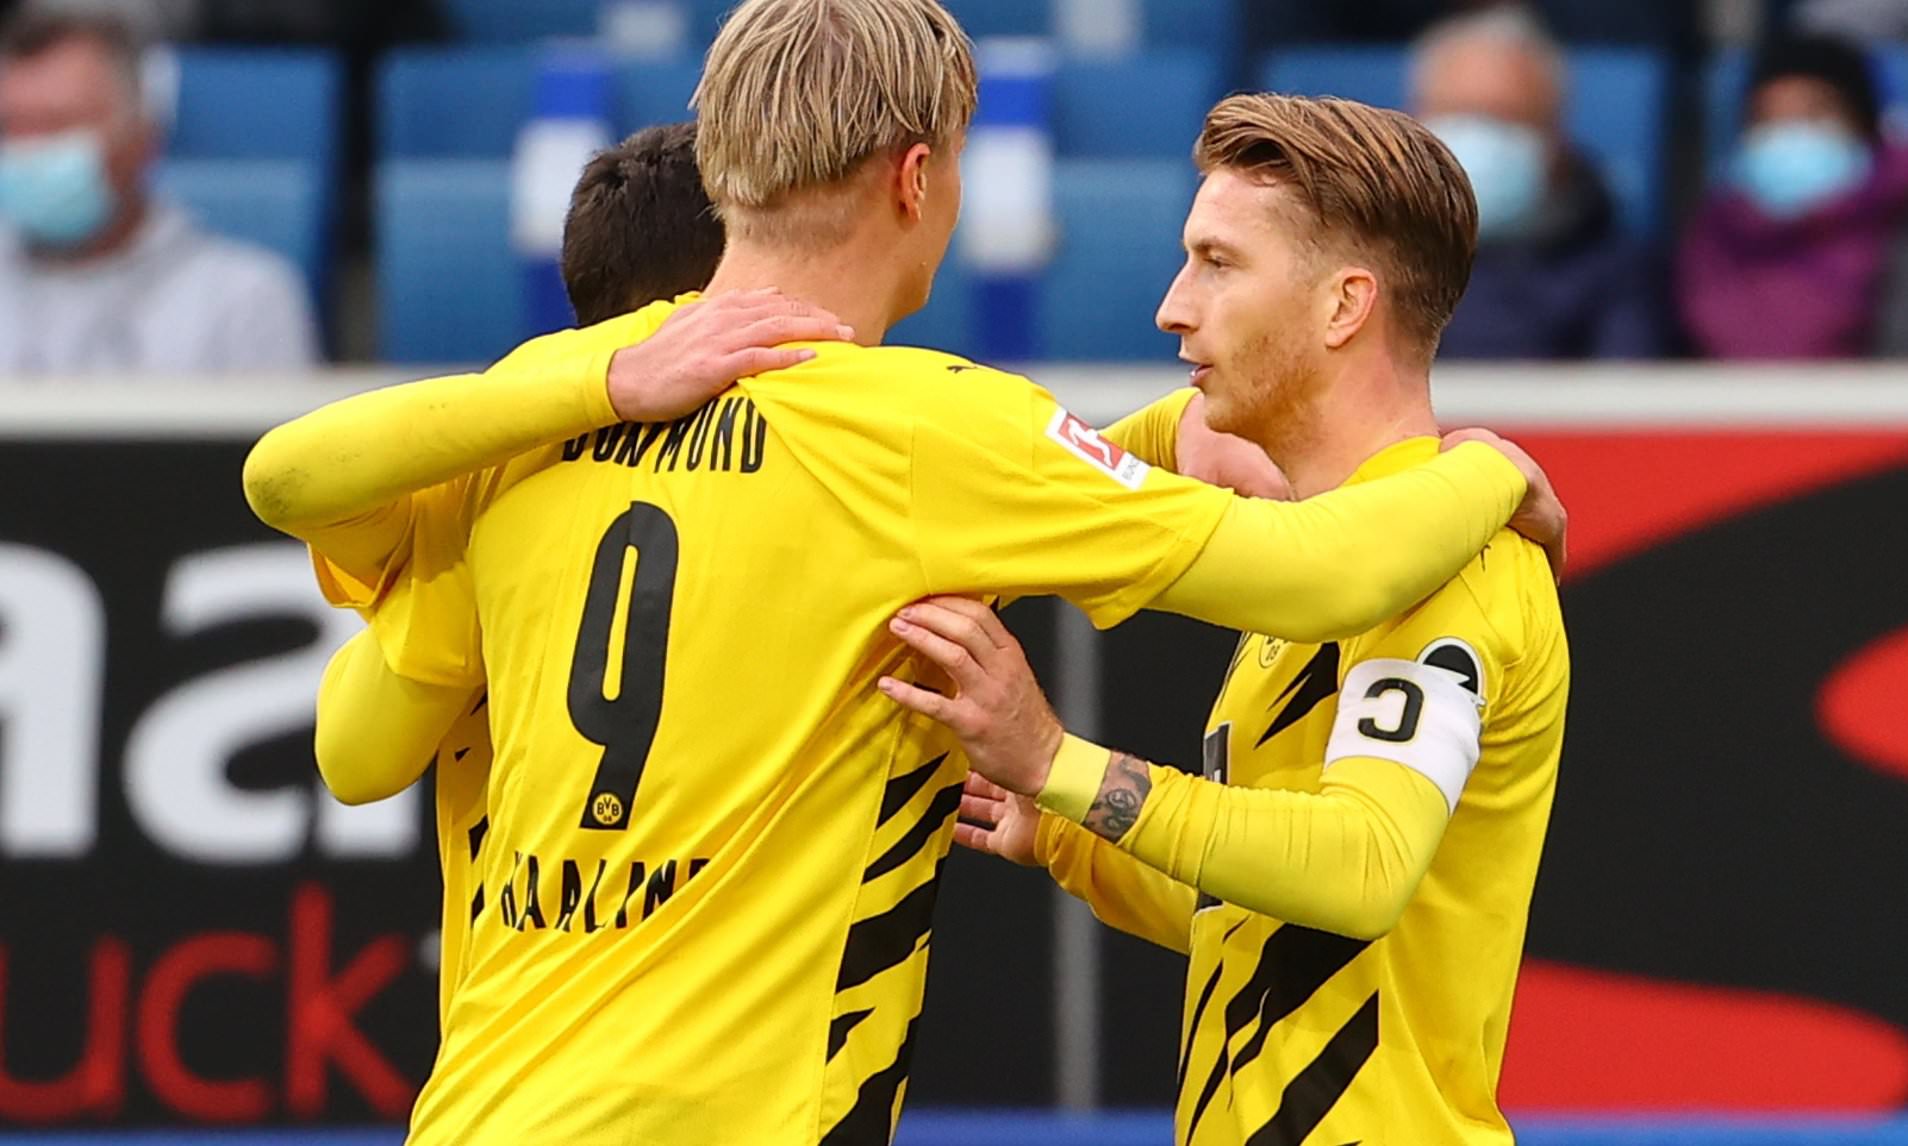 Borussia Dortmund vs Arminia Bielefeld – Nhận định kèo bóng đá 21h30 27/02/2021 – VĐQG Đức